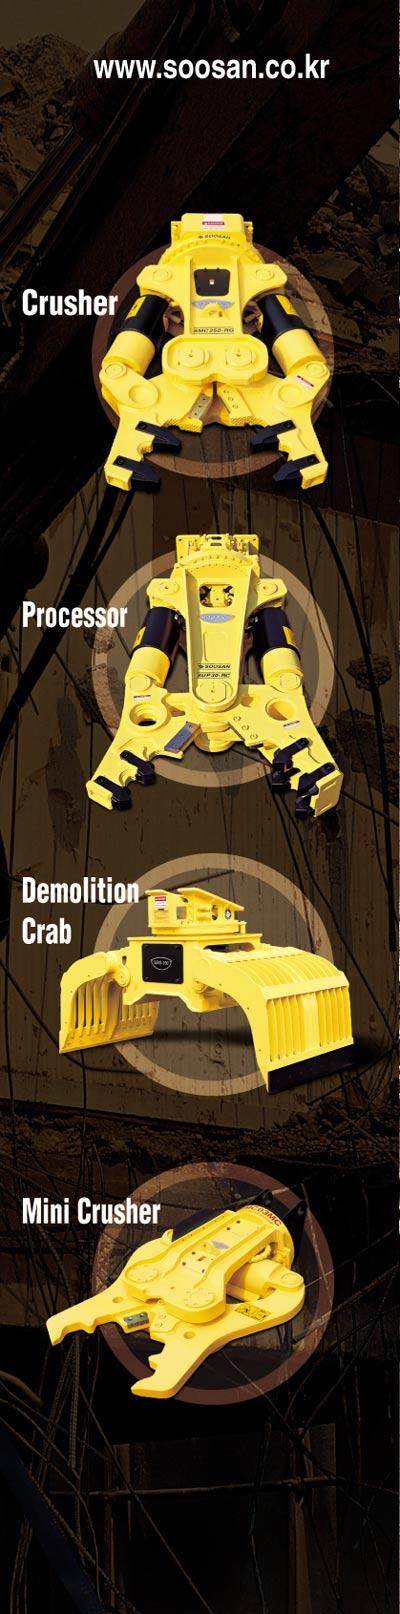 Demolition Attachments SMC Series Multi - Crushers